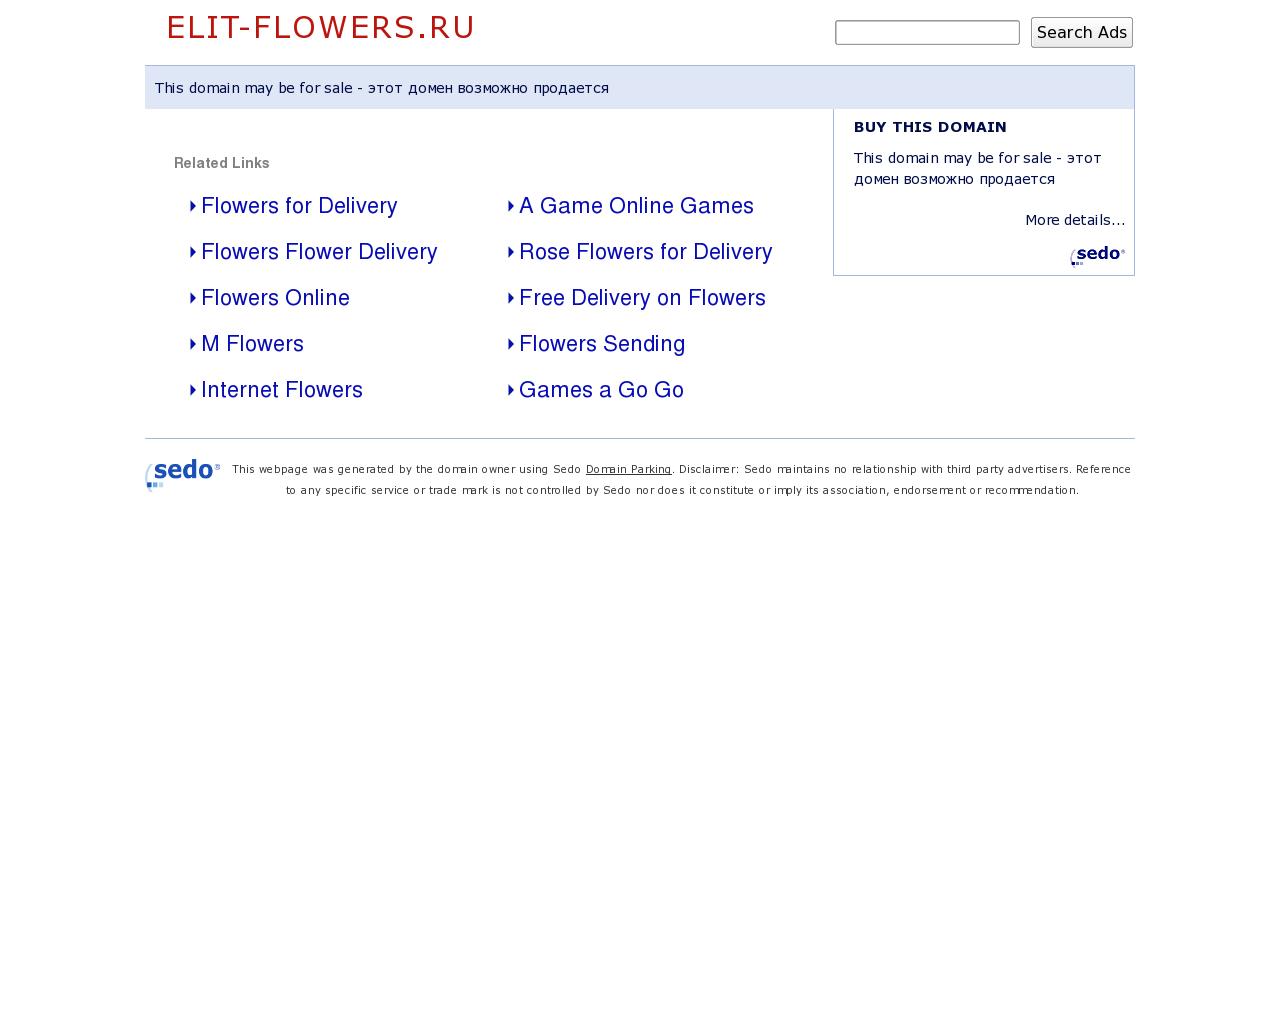 Изображение сайта elit-flowers.ru в разрешении 1280x1024